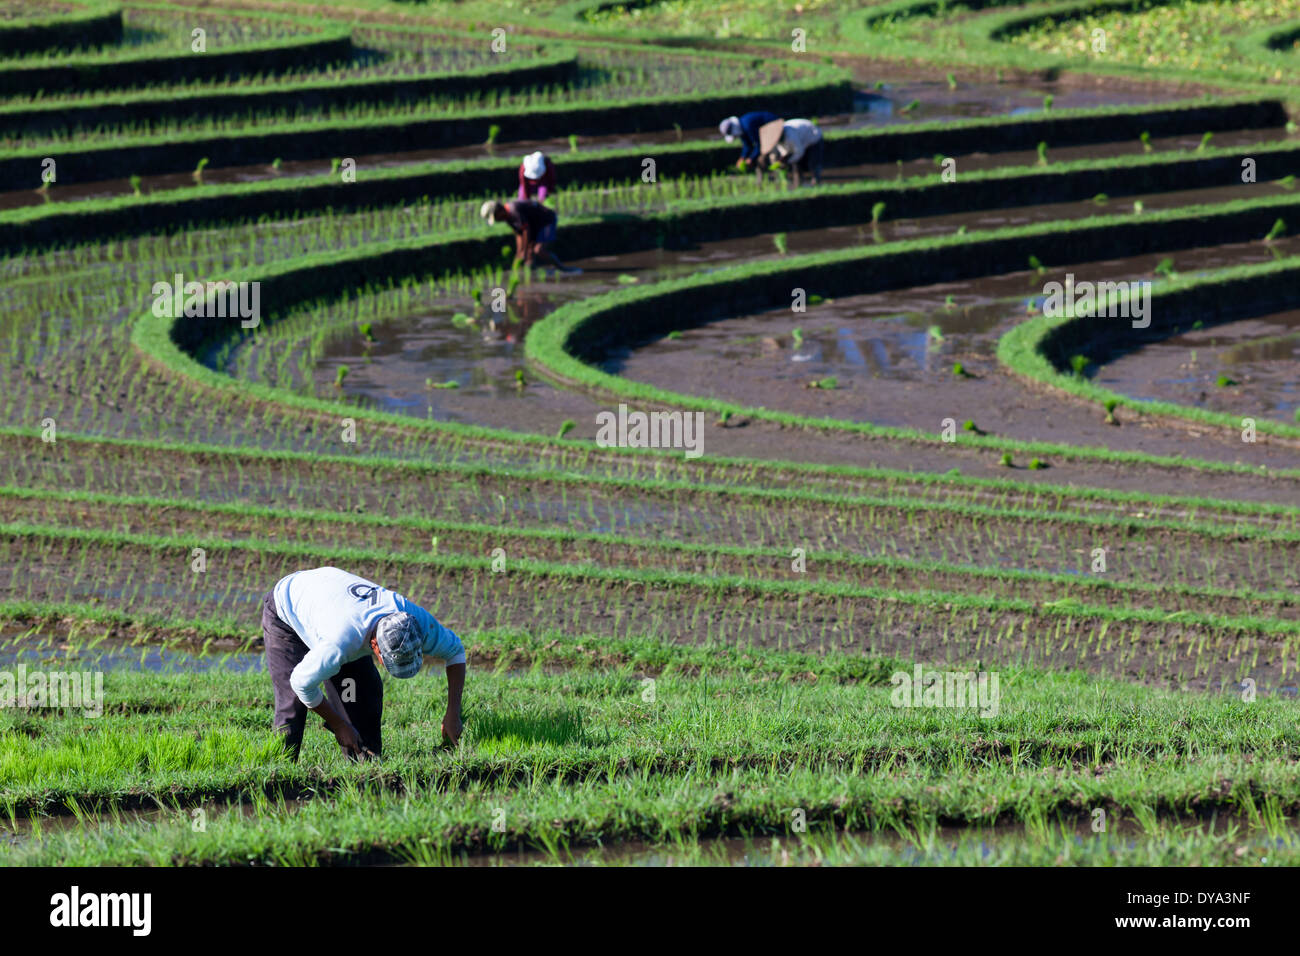 Las personas que trabajan en el campo de arroz en la región de Antosari y Belimbing (probablemente cercana a Antosari), Bali, Indonesia Foto de stock